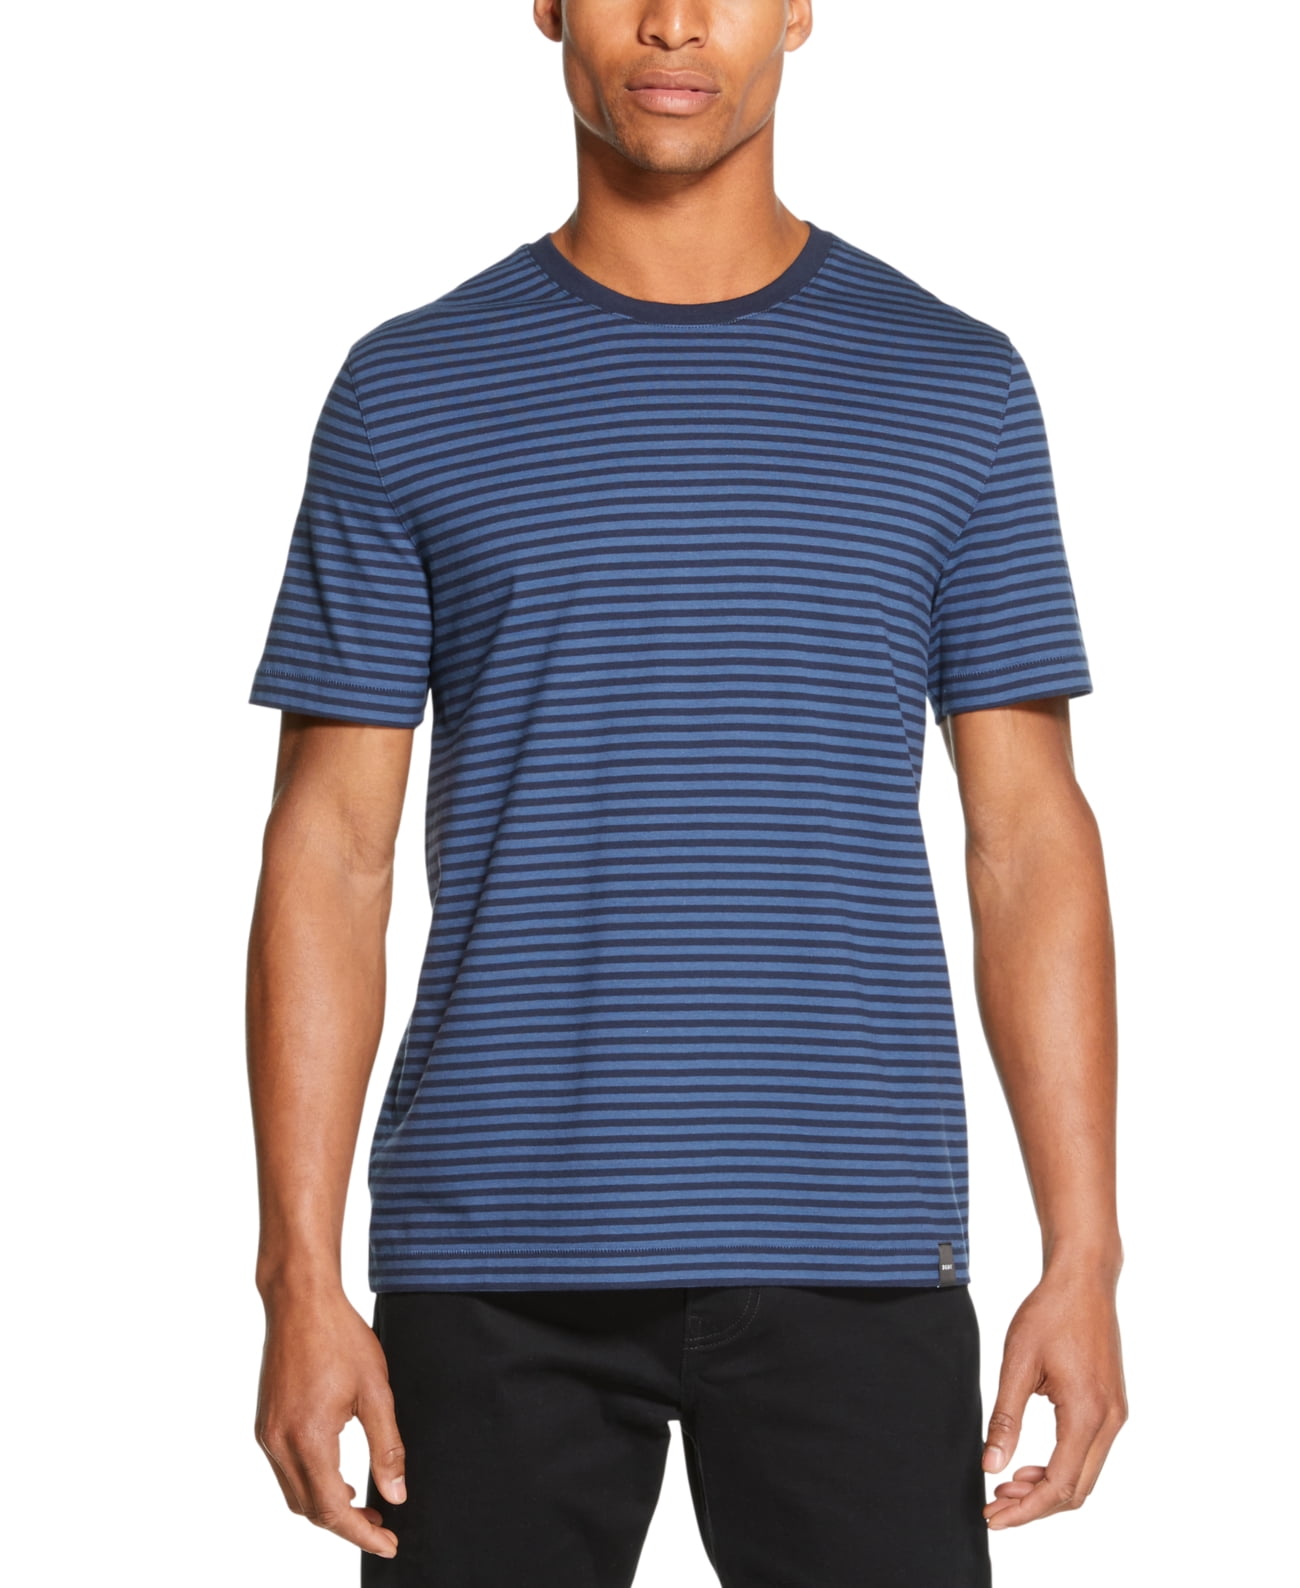 DKNY - Mens T-Shirt Navy Crewneck Short Sleeve Striped Tee 2XL ...